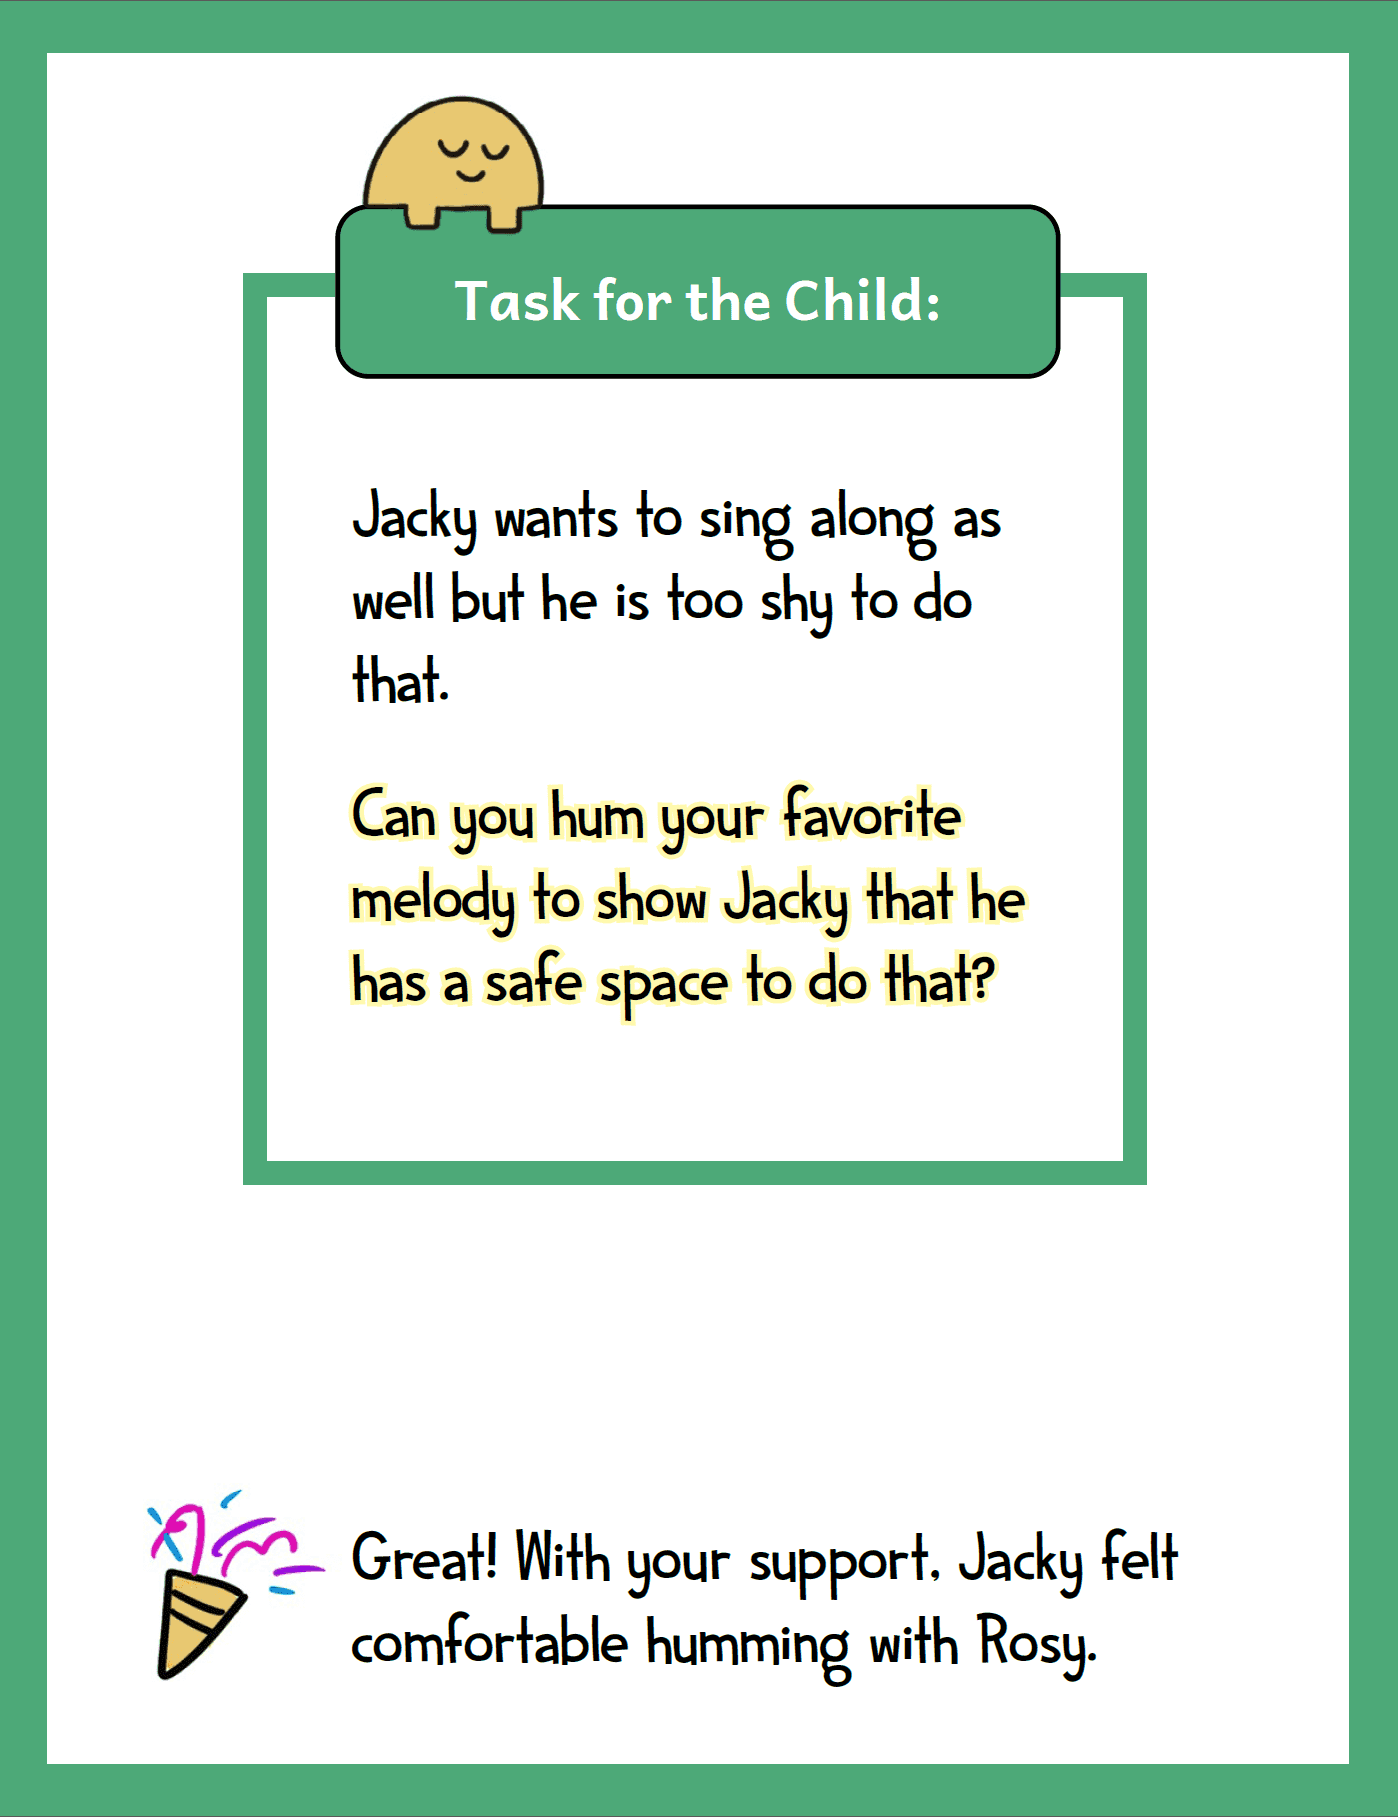 Tasks for children